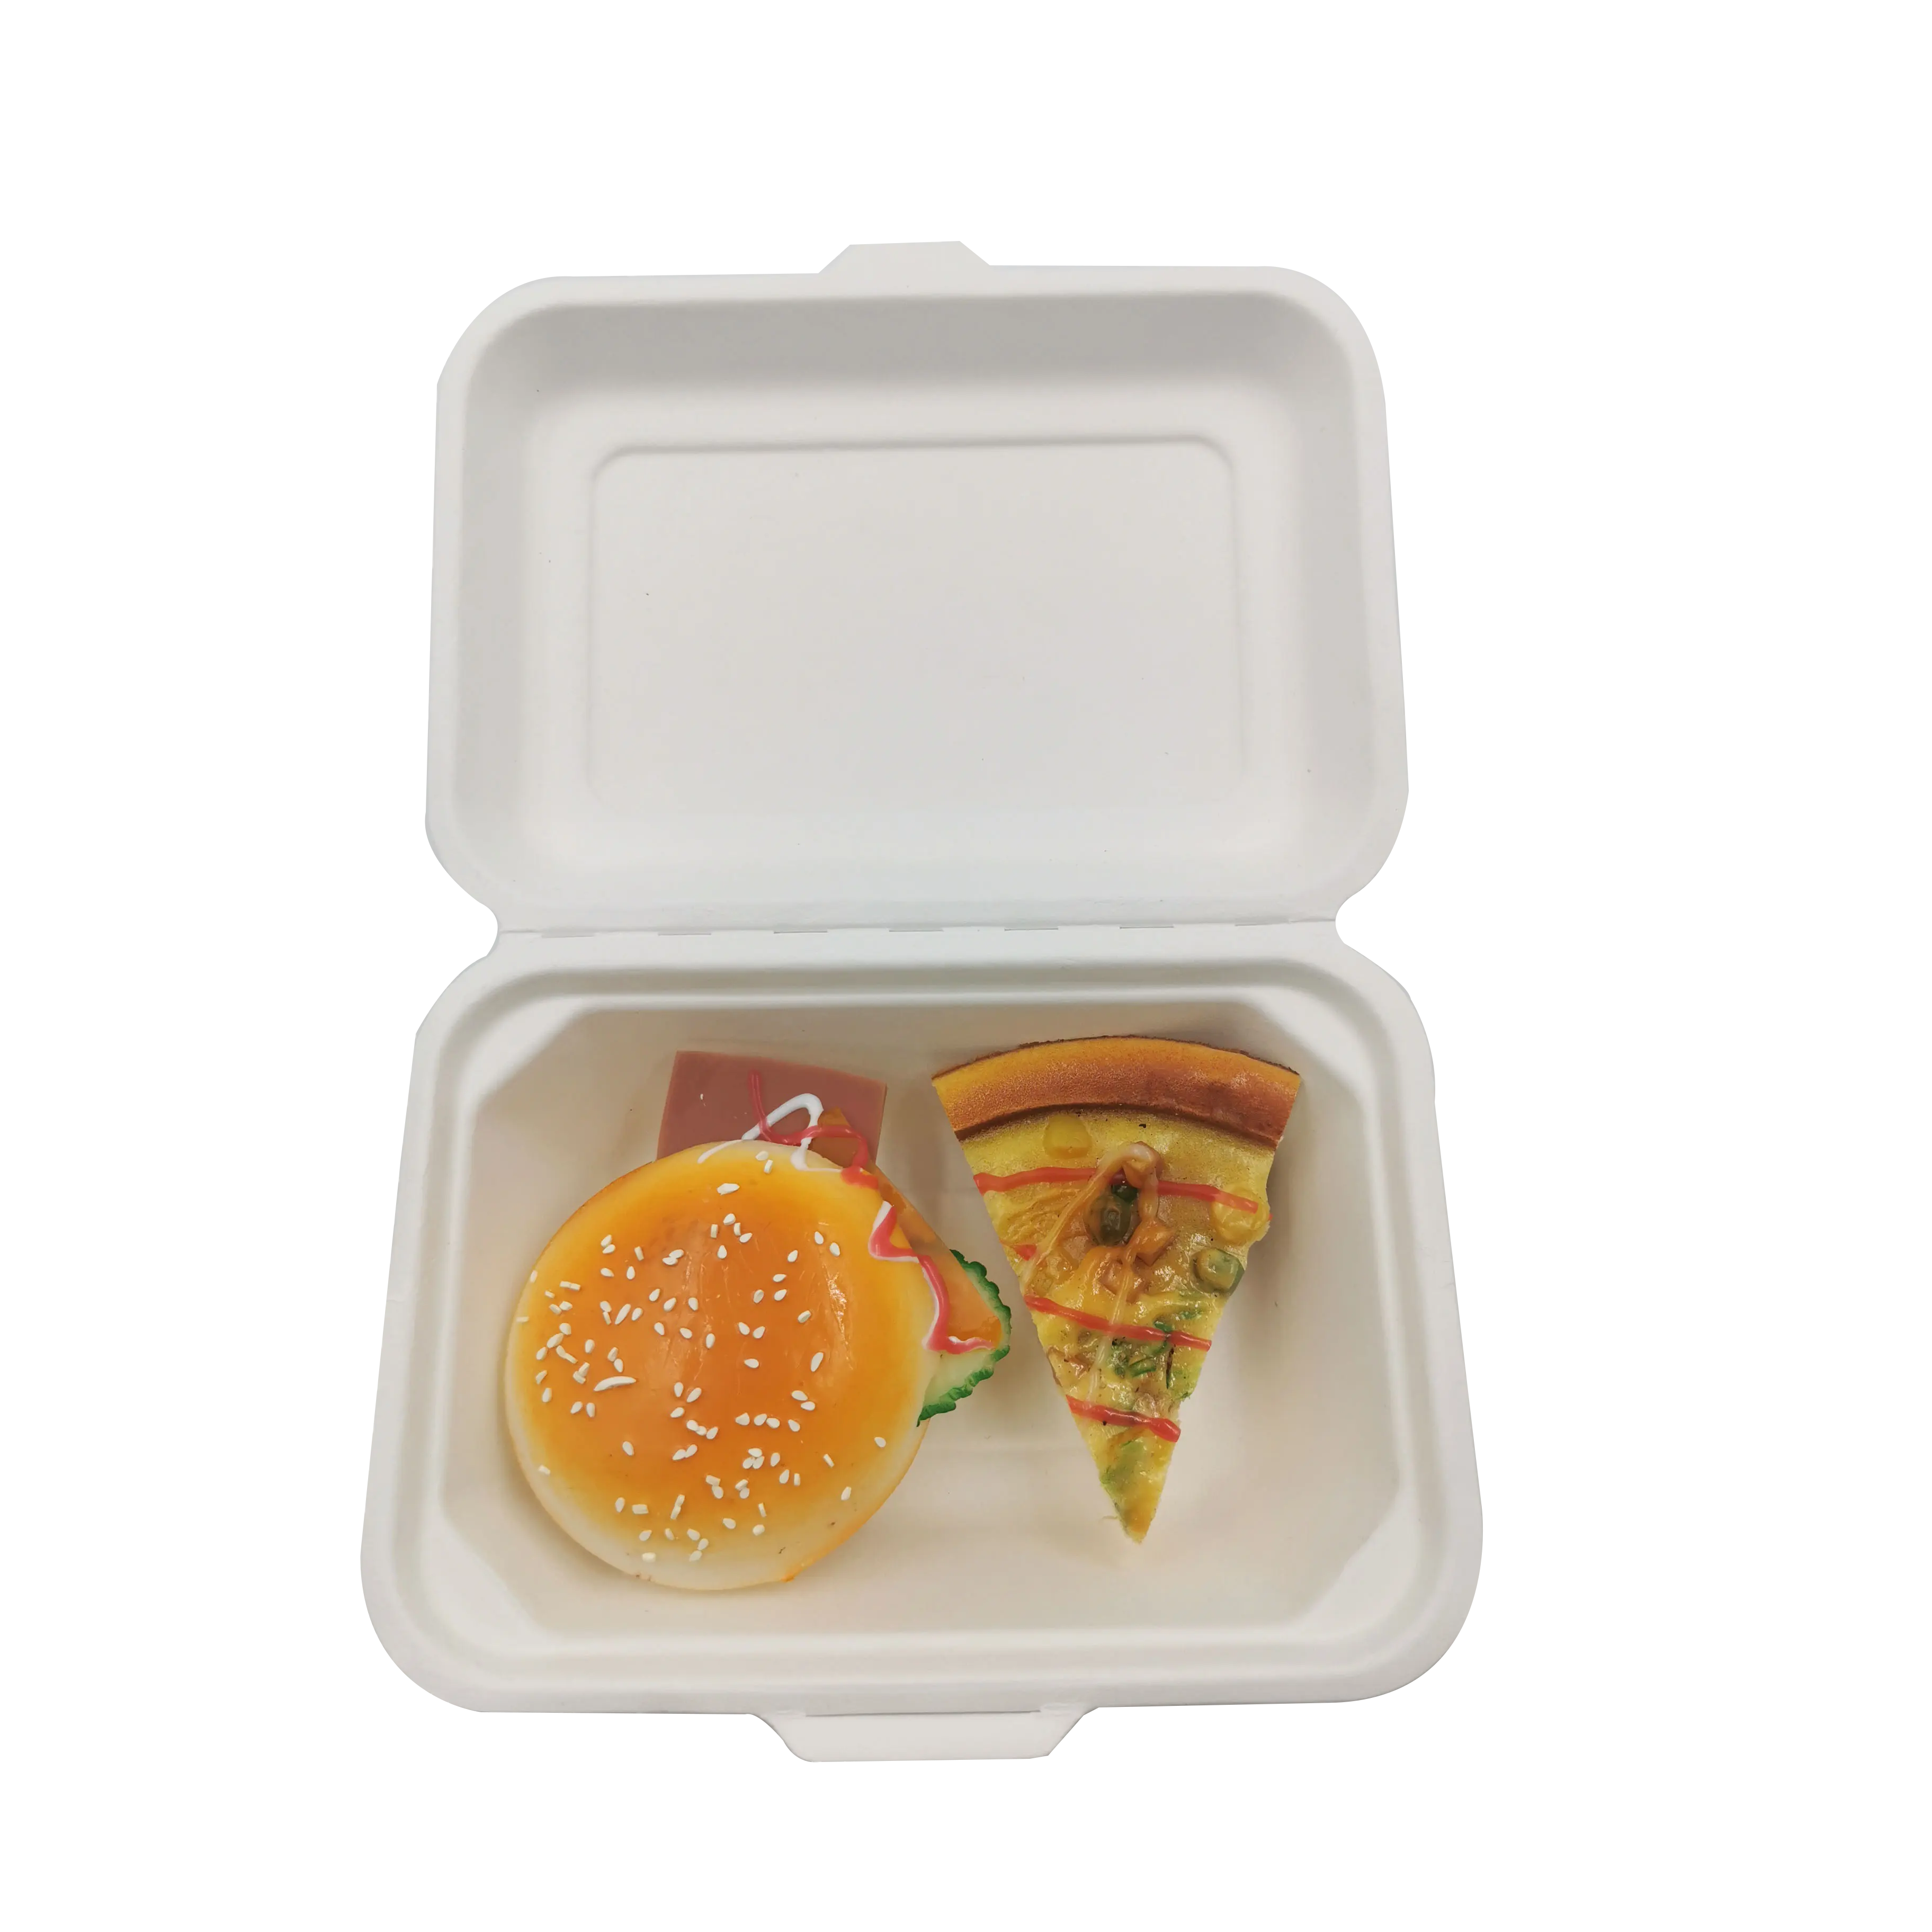 Kostenlose Probe Günstige 600ml Einweg umwelt freundliche Fast-Food-Behälter Verpackung Mikrowellen geeignete Clamshell-Lunch-Container-Boxen